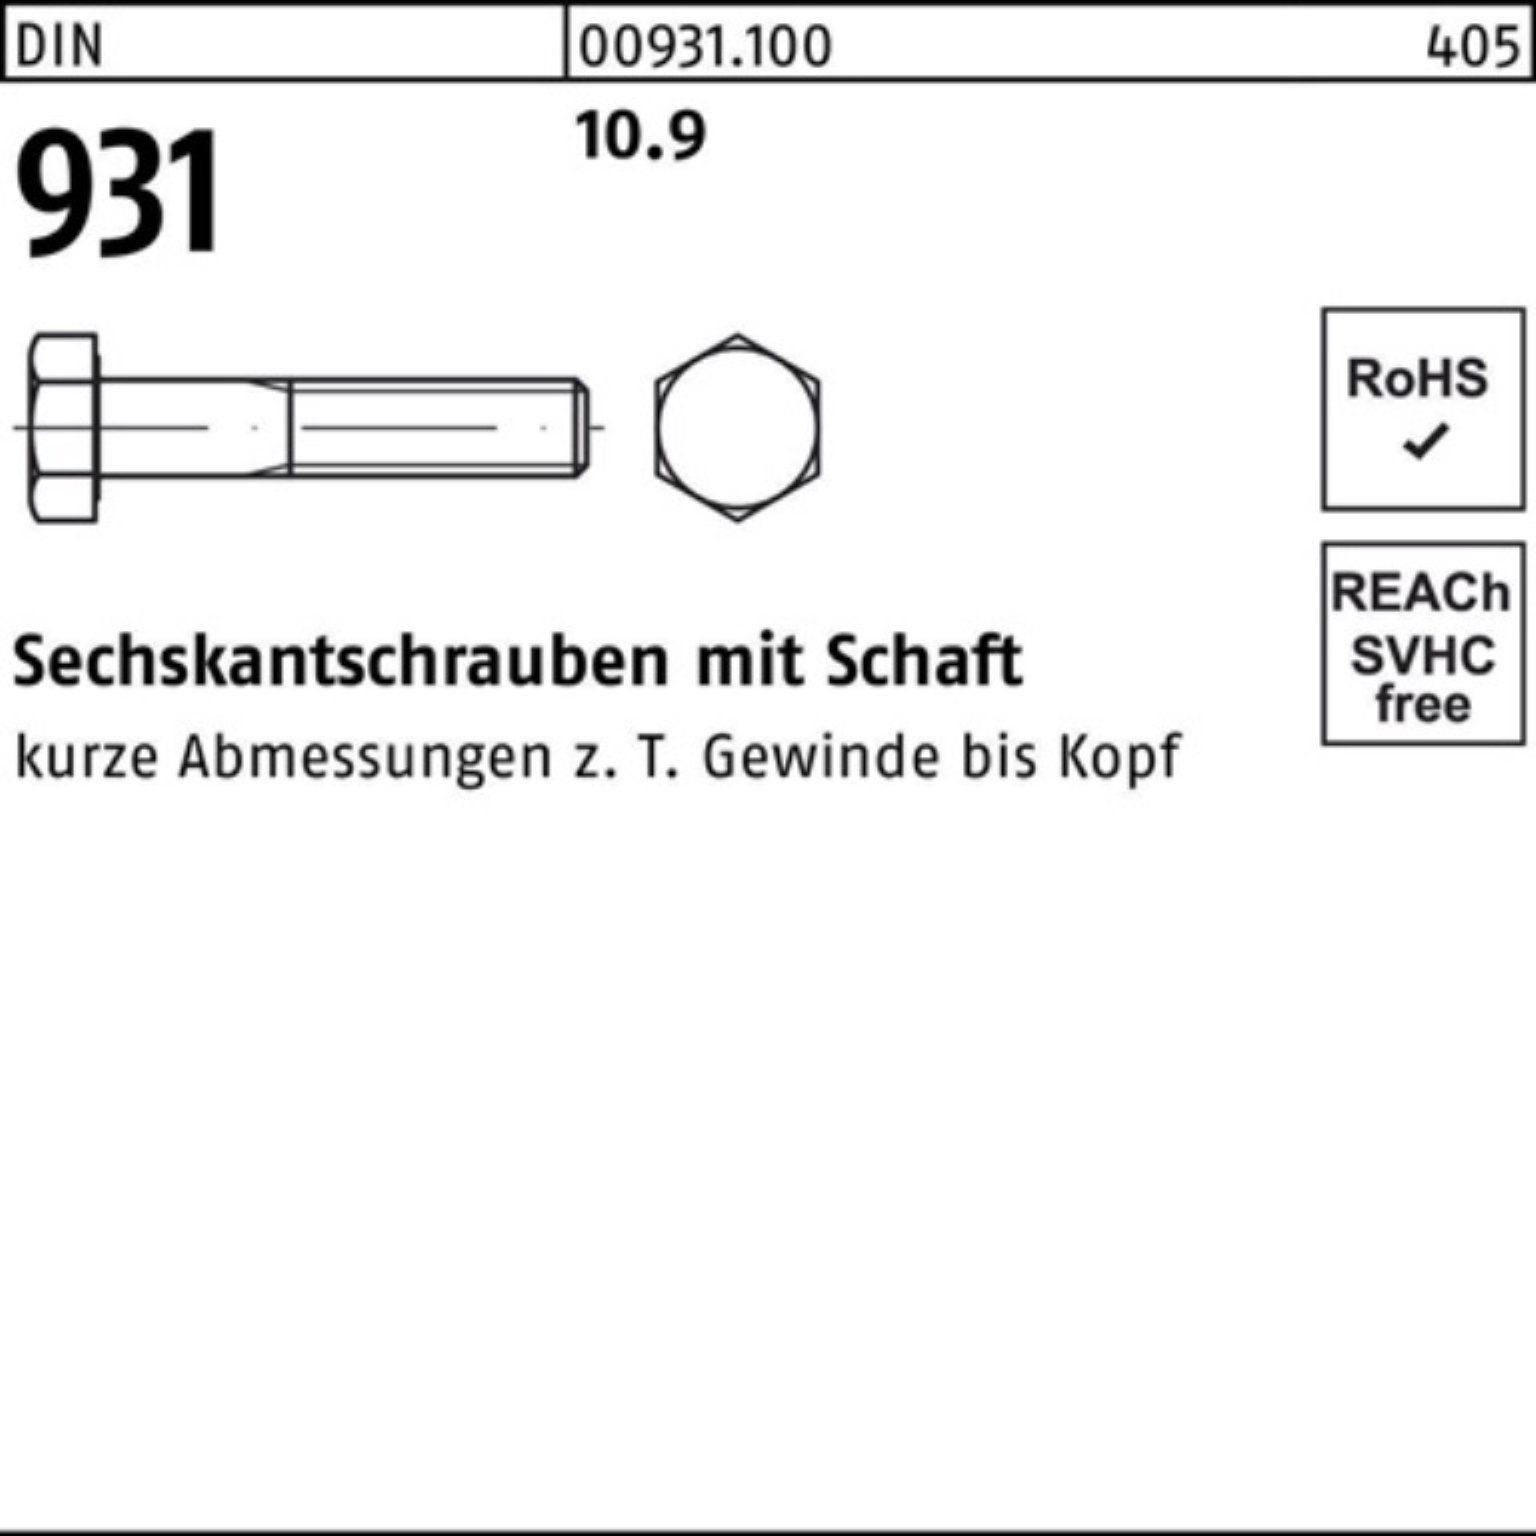 Reyher Sechskantschraube 931 Stück DIN 10.9 200 Sechskantschraube Pack DIN M5x Schaft 200er 45